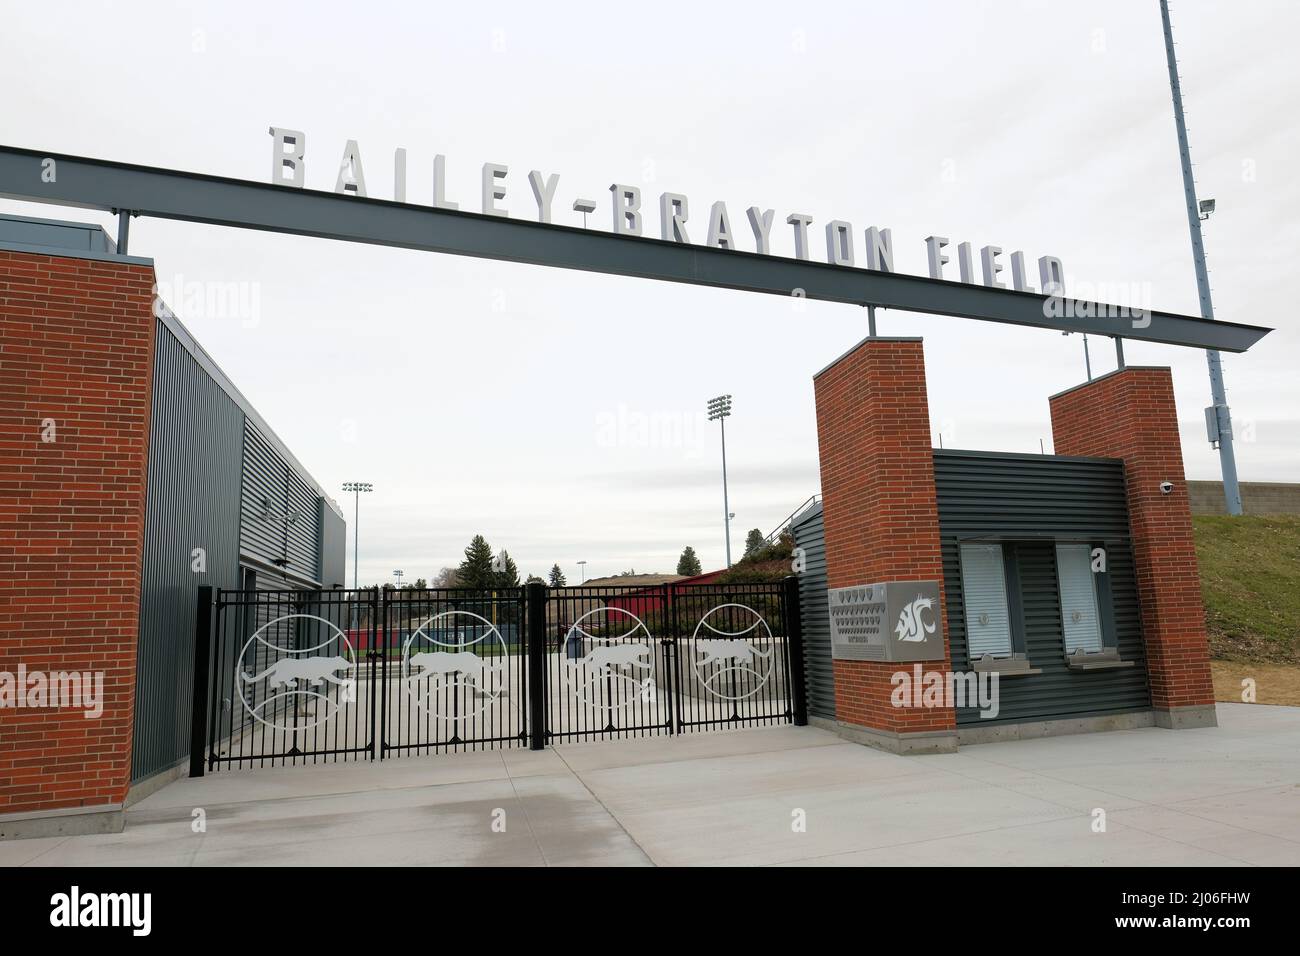 Bailey–Brayton Field, stade de baseball universitaire sur le campus de l'université d'État de Washington à Pullman, Washington ; WSU Cougars ; Cougar Athletics. Banque D'Images